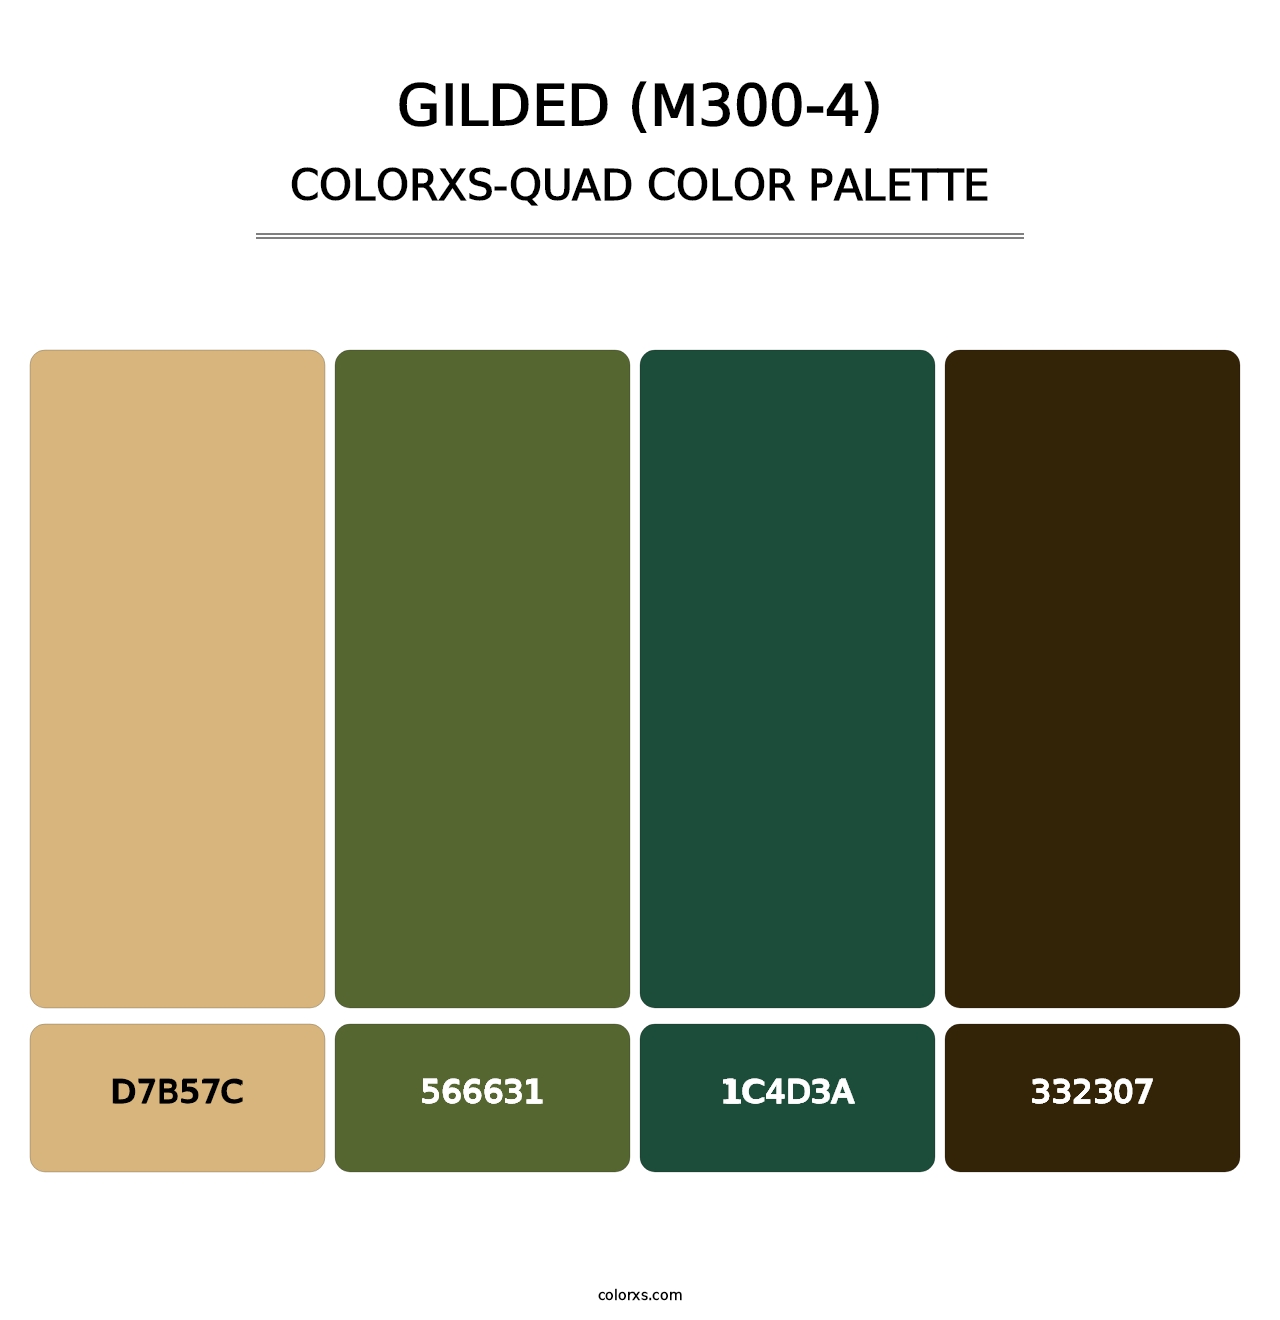 Gilded (M300-4) - Colorxs Quad Palette